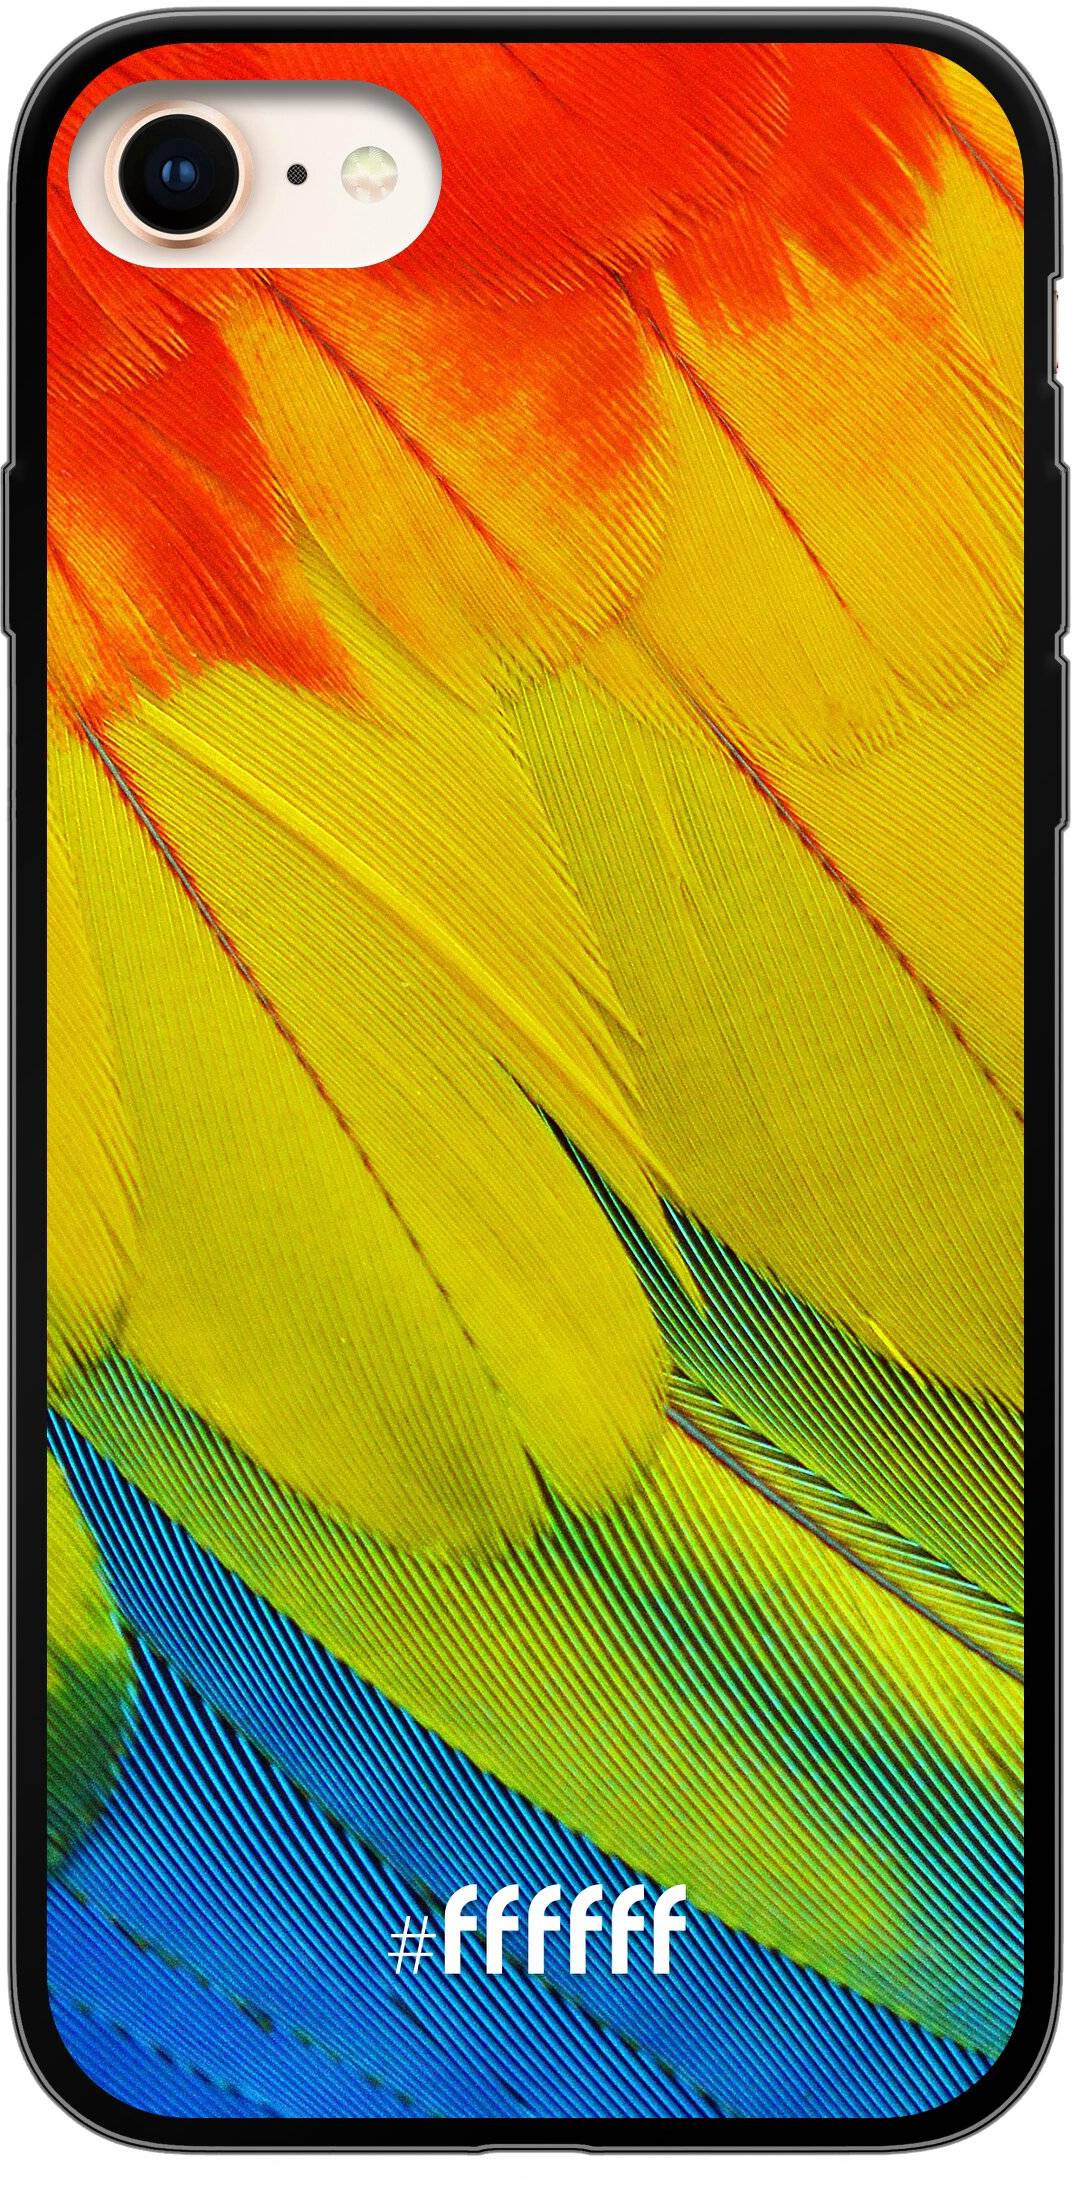 Macaw Hues iPhone 7